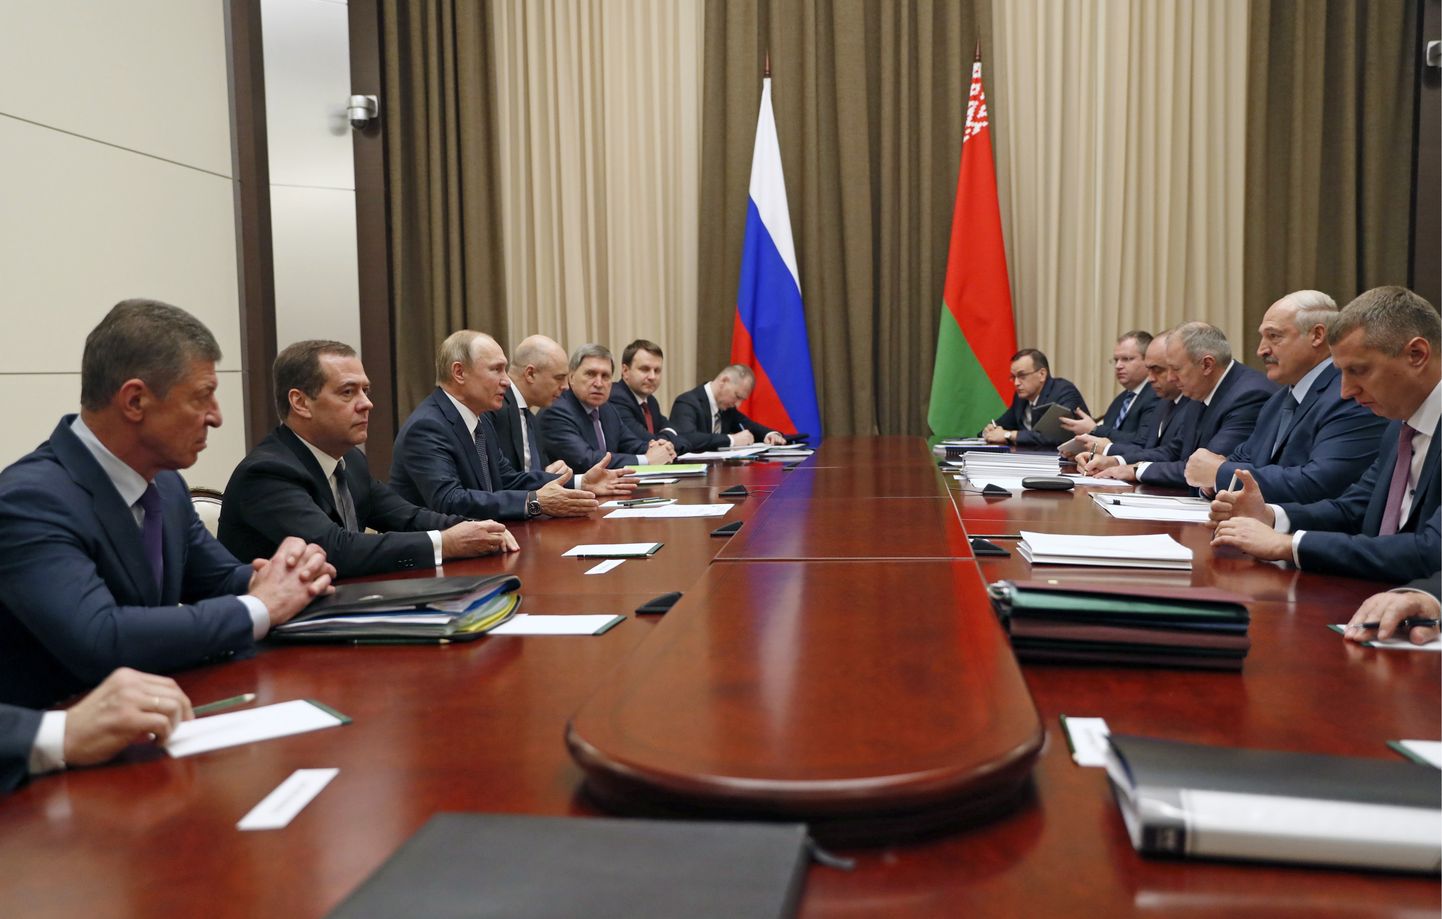 Vene president Vladimir Putin ja Valgevene president Aleksandr Lukašenko pidasid laupäeval Sotšis üle viie tunni kõnelusi.